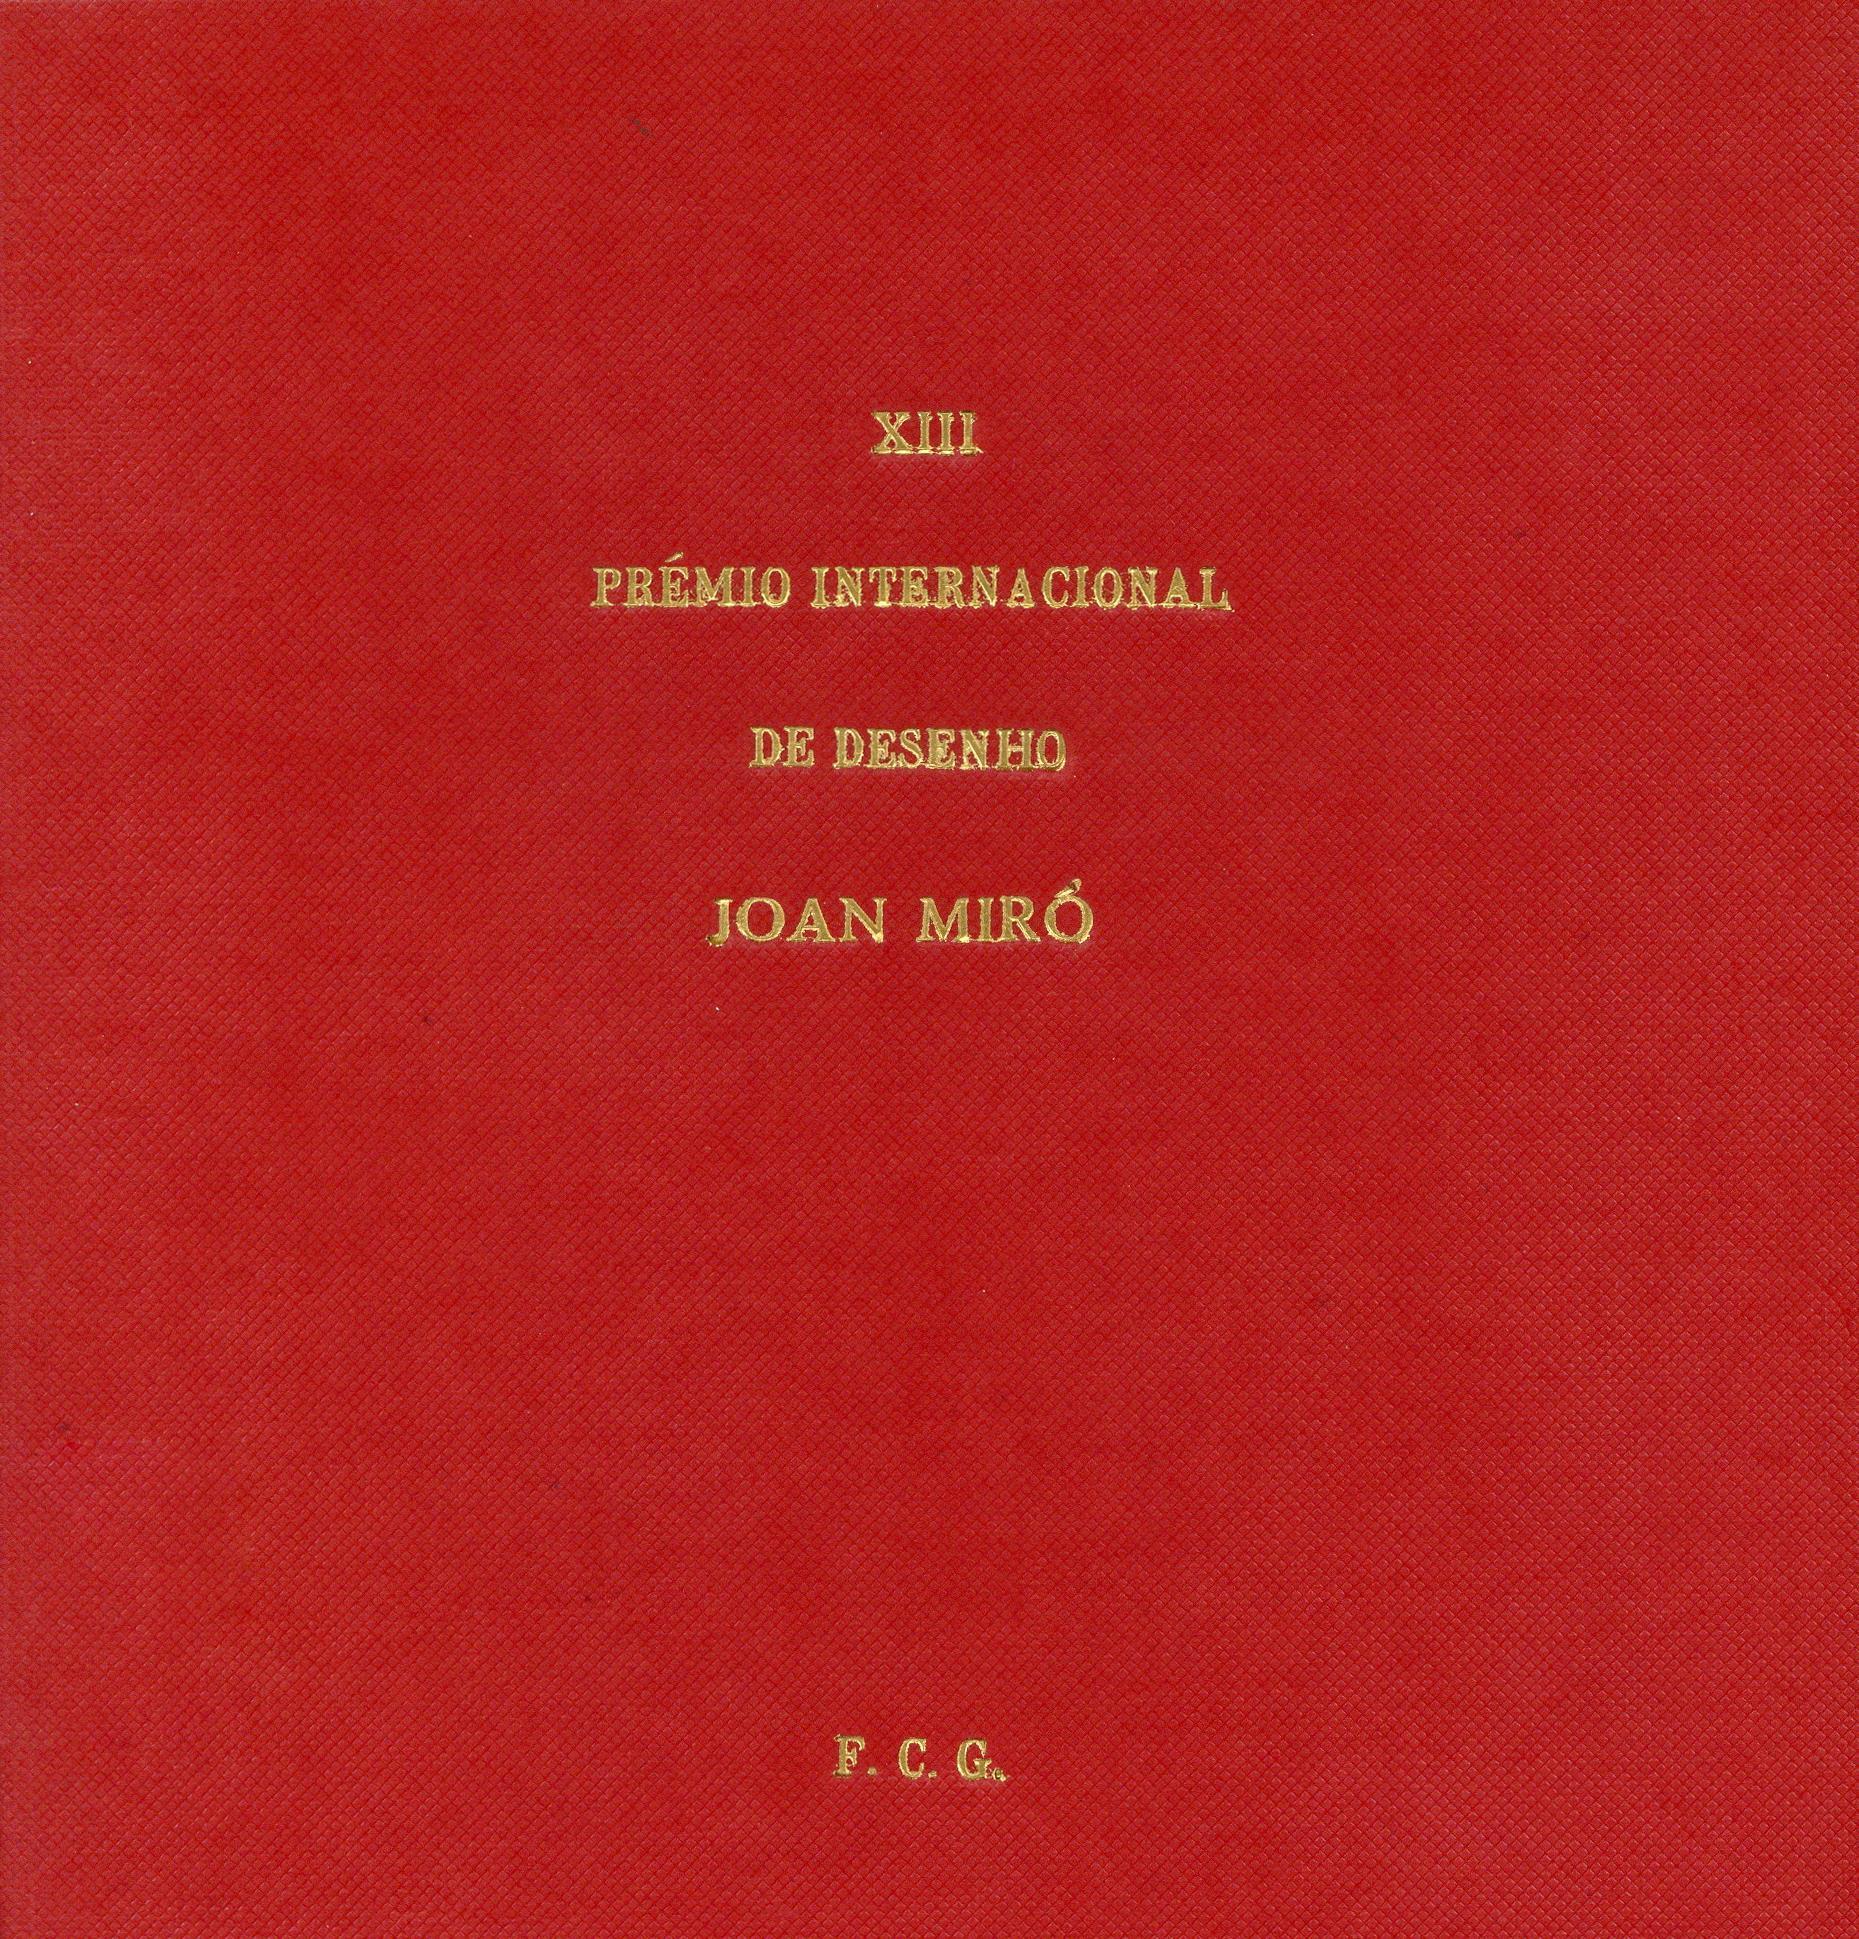 1974_Premio de Desenho Joan Miro_DE520